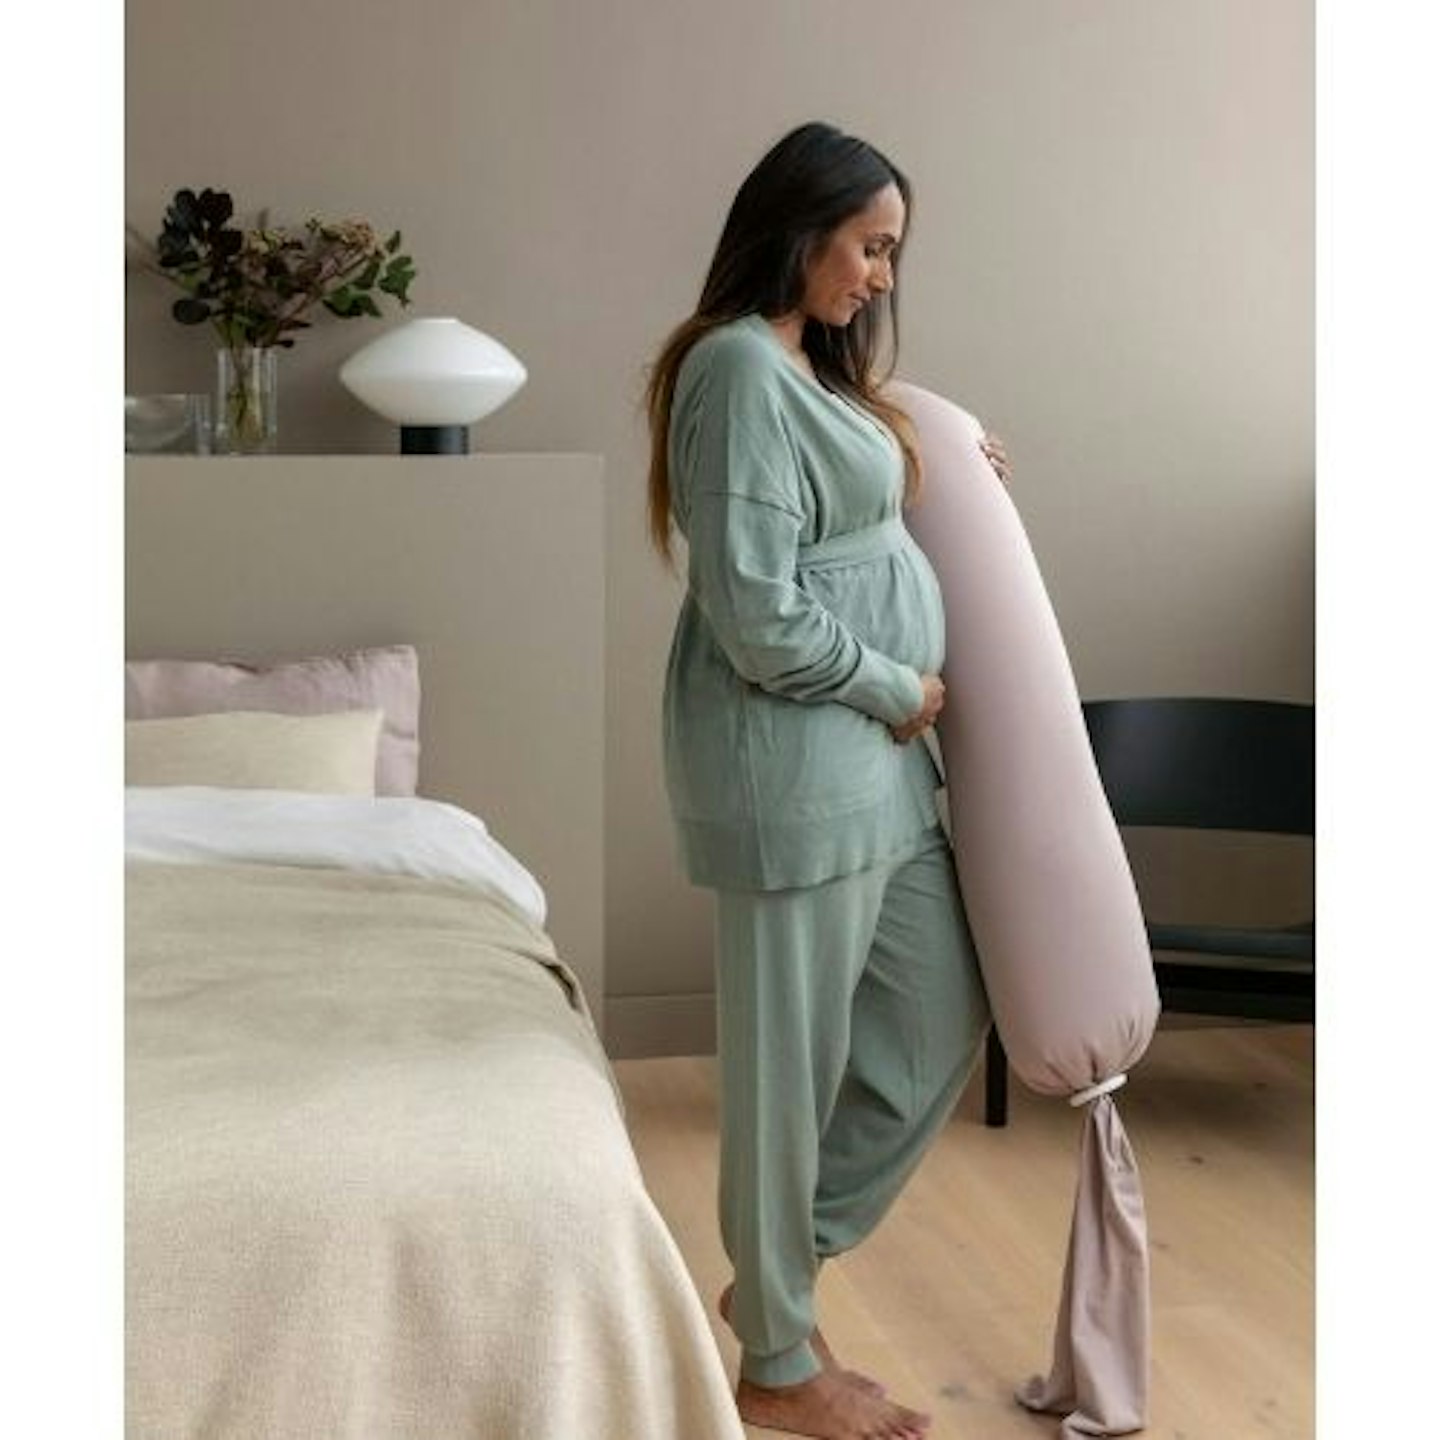 BLUZEN Pregnancy Pillow